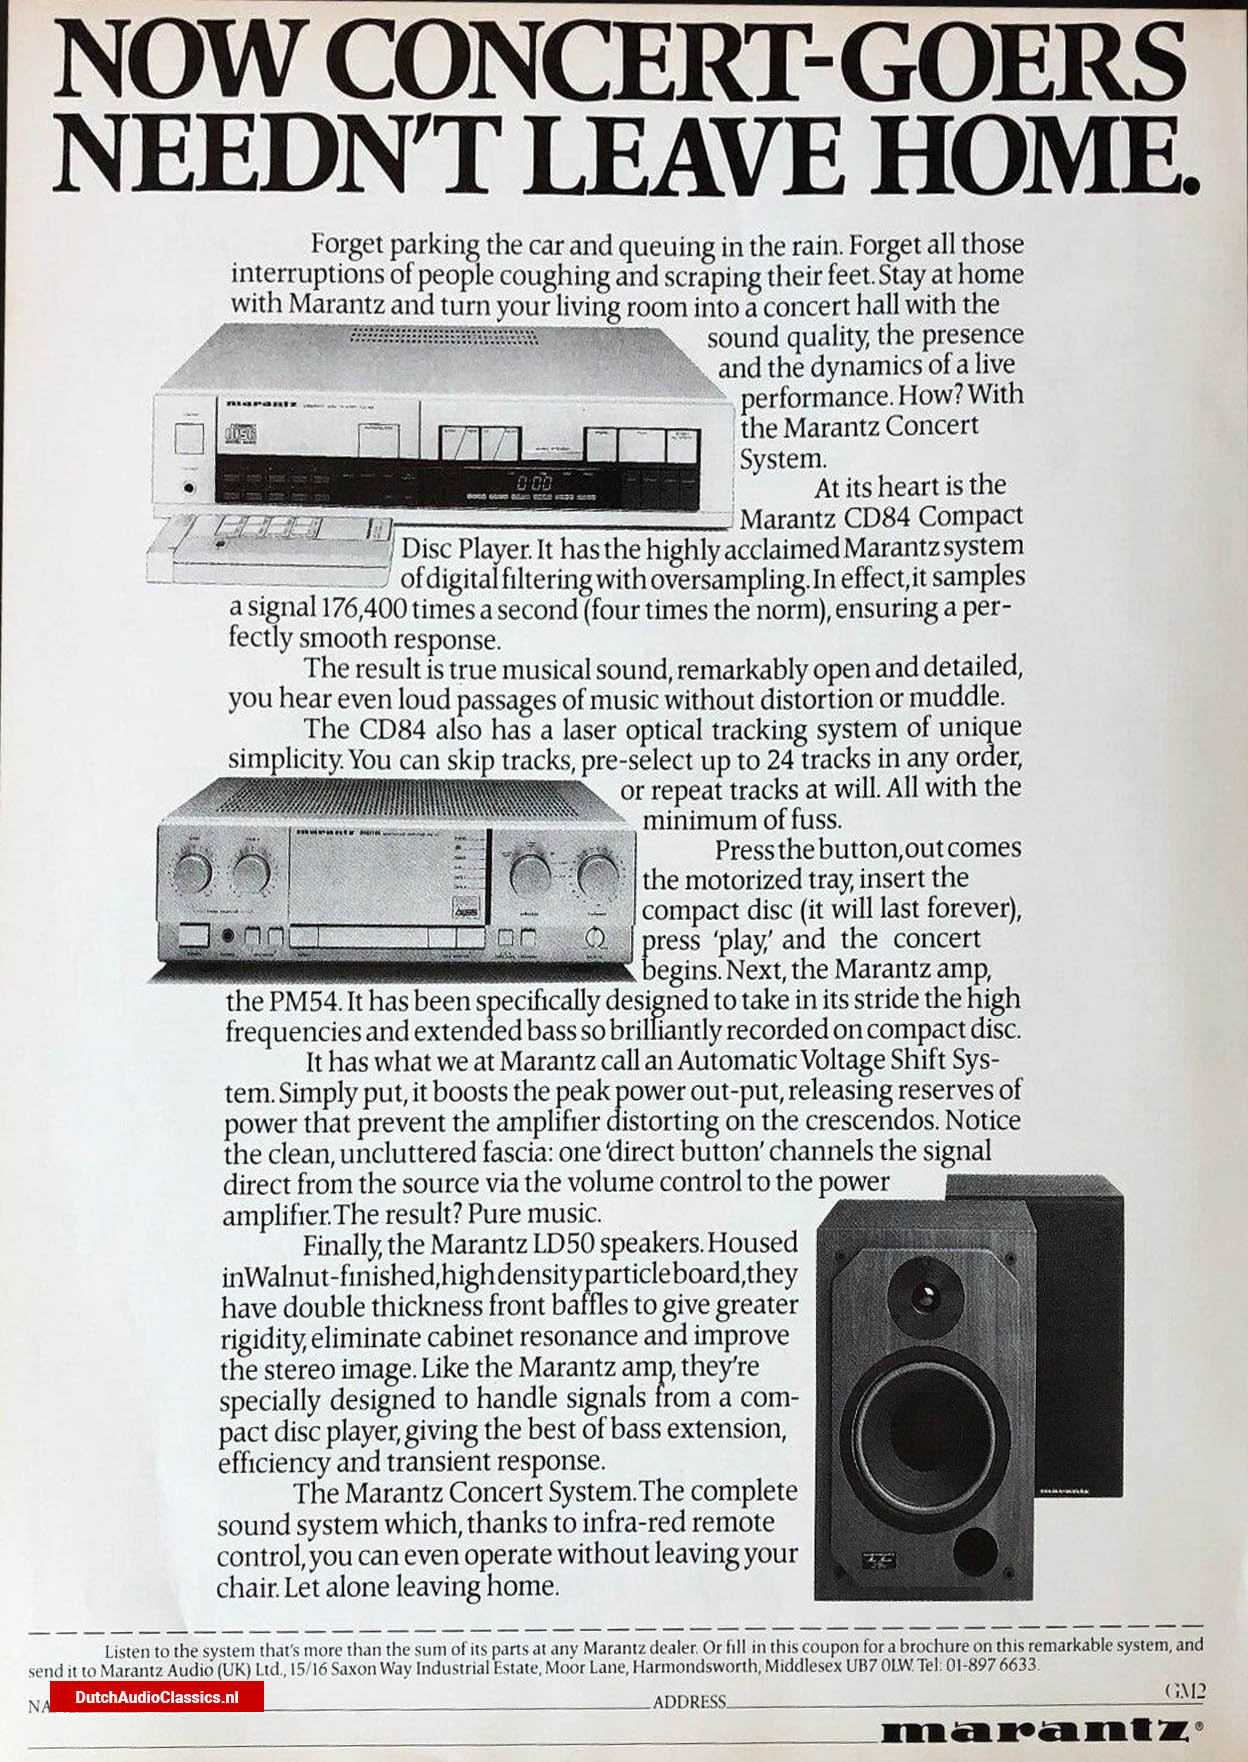 Marantz cd84 advertisement November 1984